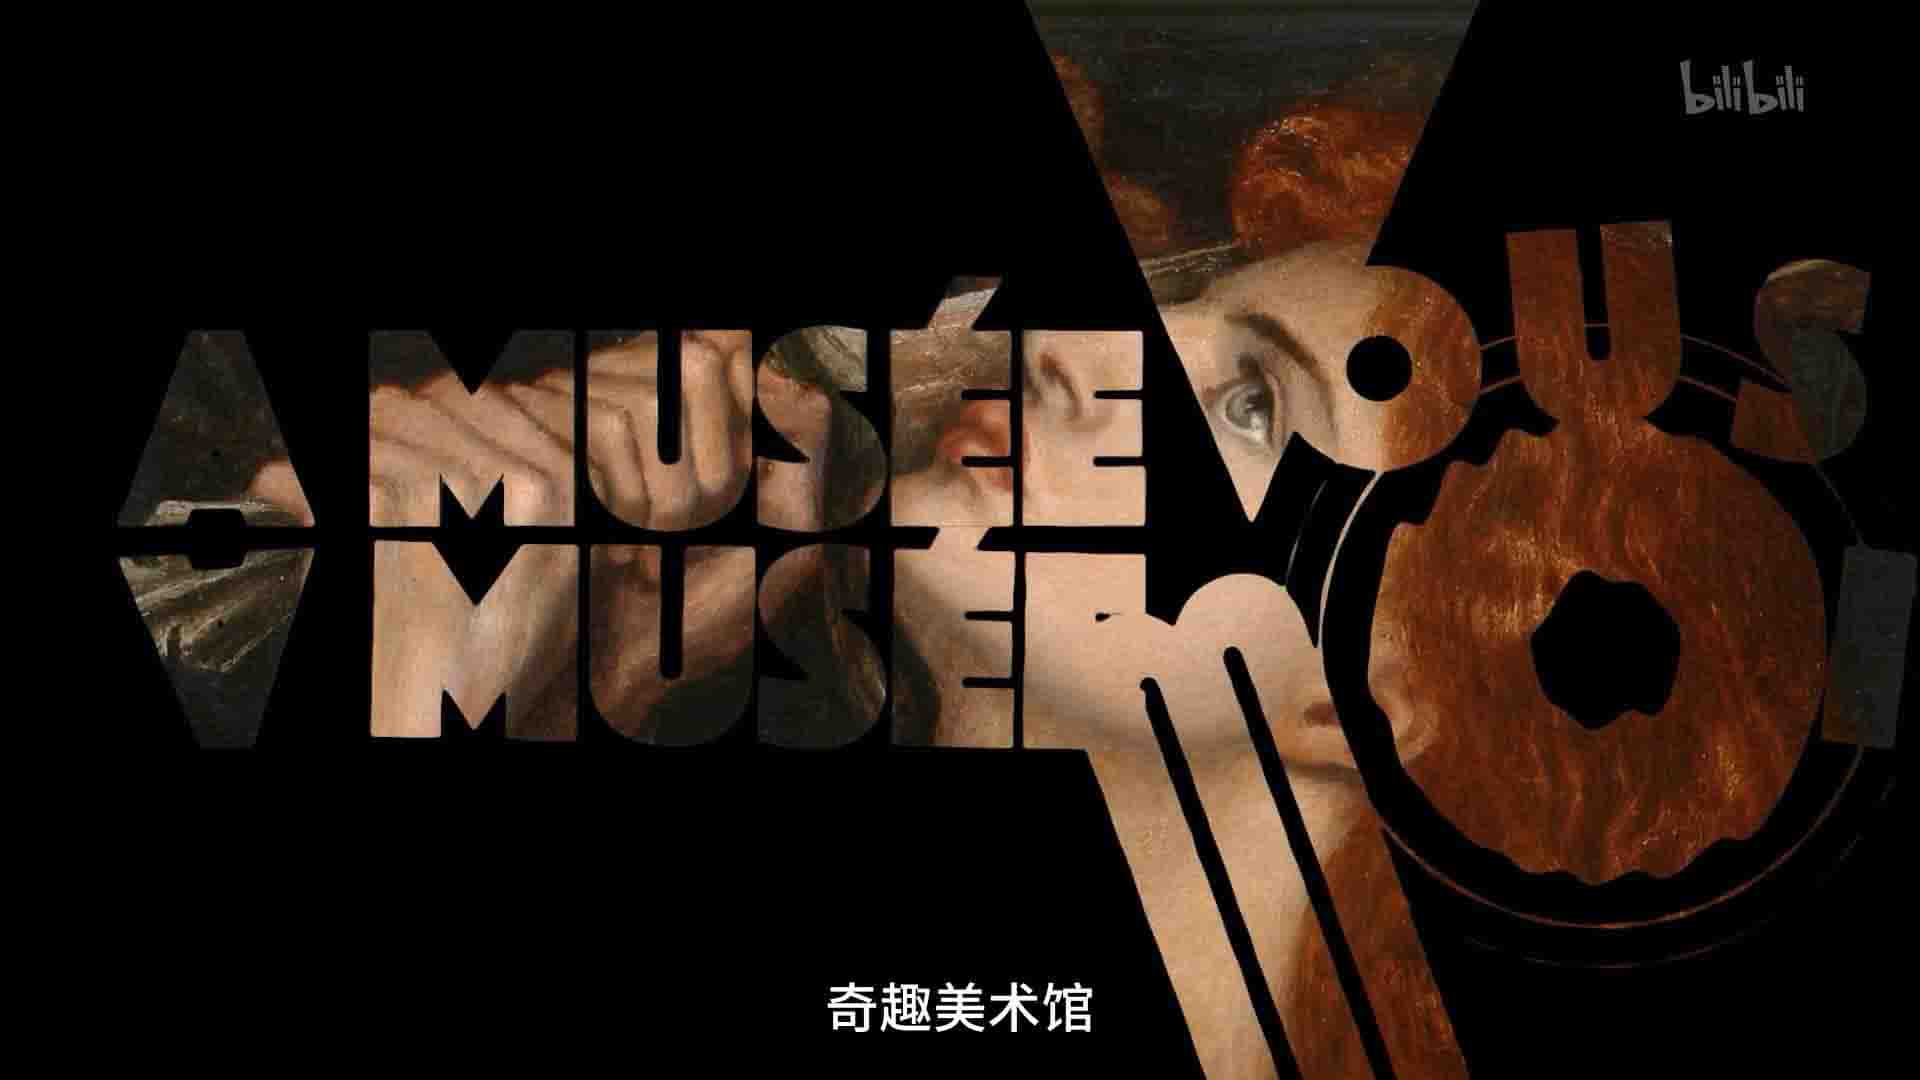 法国纪录片《奇趣美术馆 A Musée vous, à musée moi 2021》第1-3季全90集 法语中字 1080P高清网盘下载 